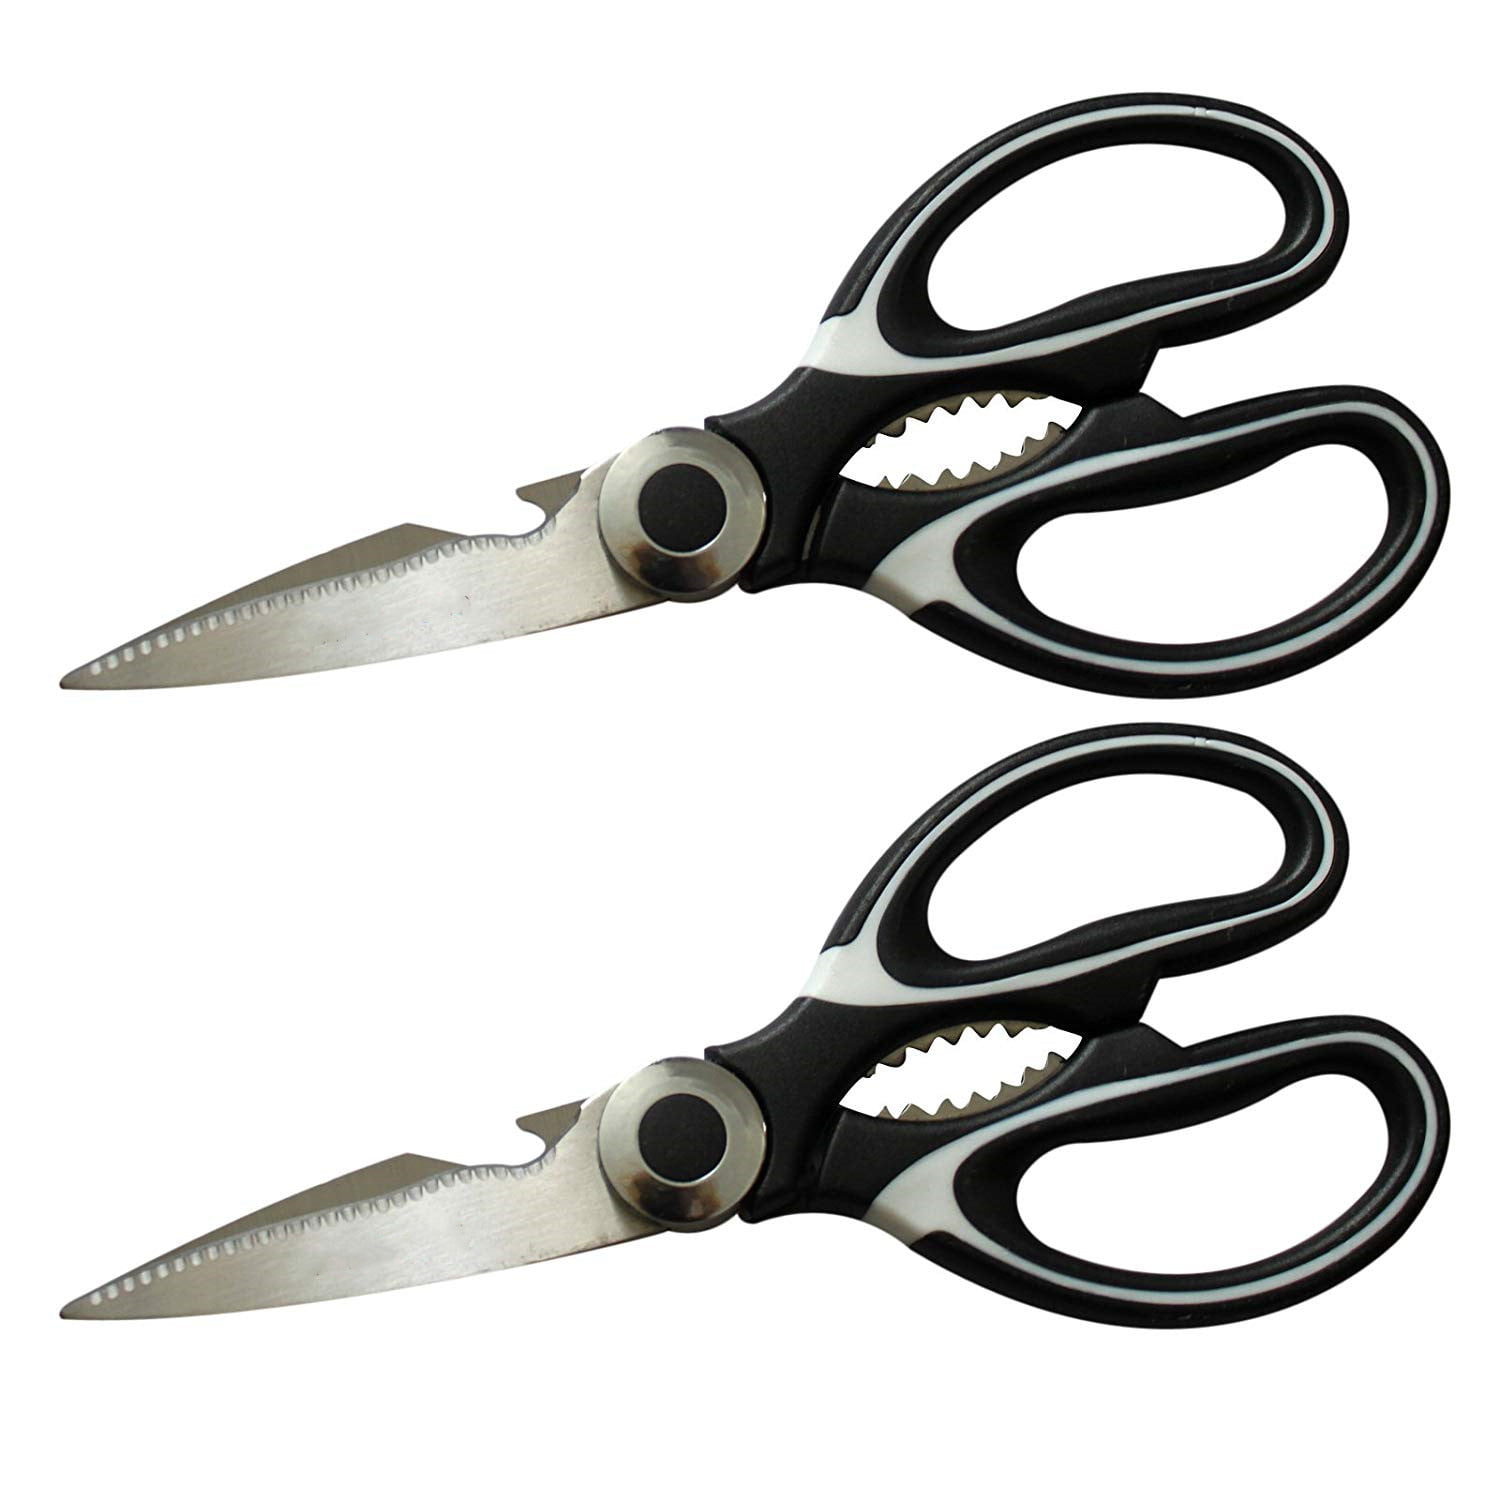 Multifunction Kitchen Scissors 2Piece Set, Heavy Duty Food Shears for